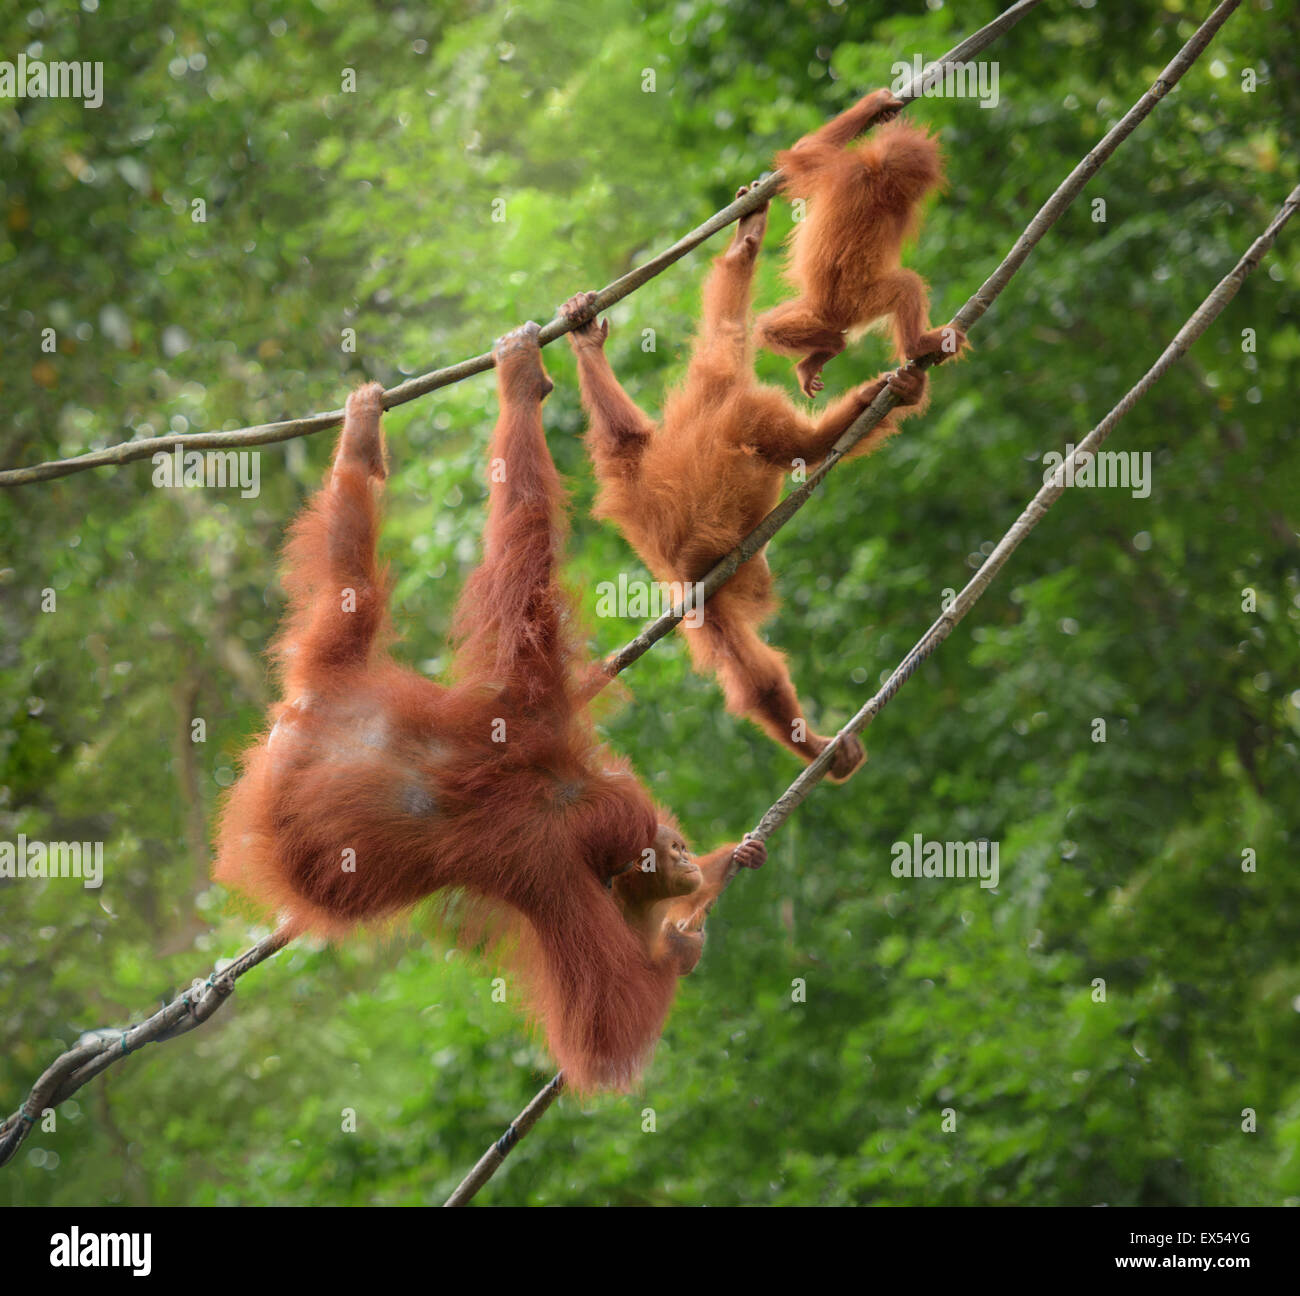 Famiglia orangutan in pose divertenti passeggiate su liana in una giungla Foto Stock